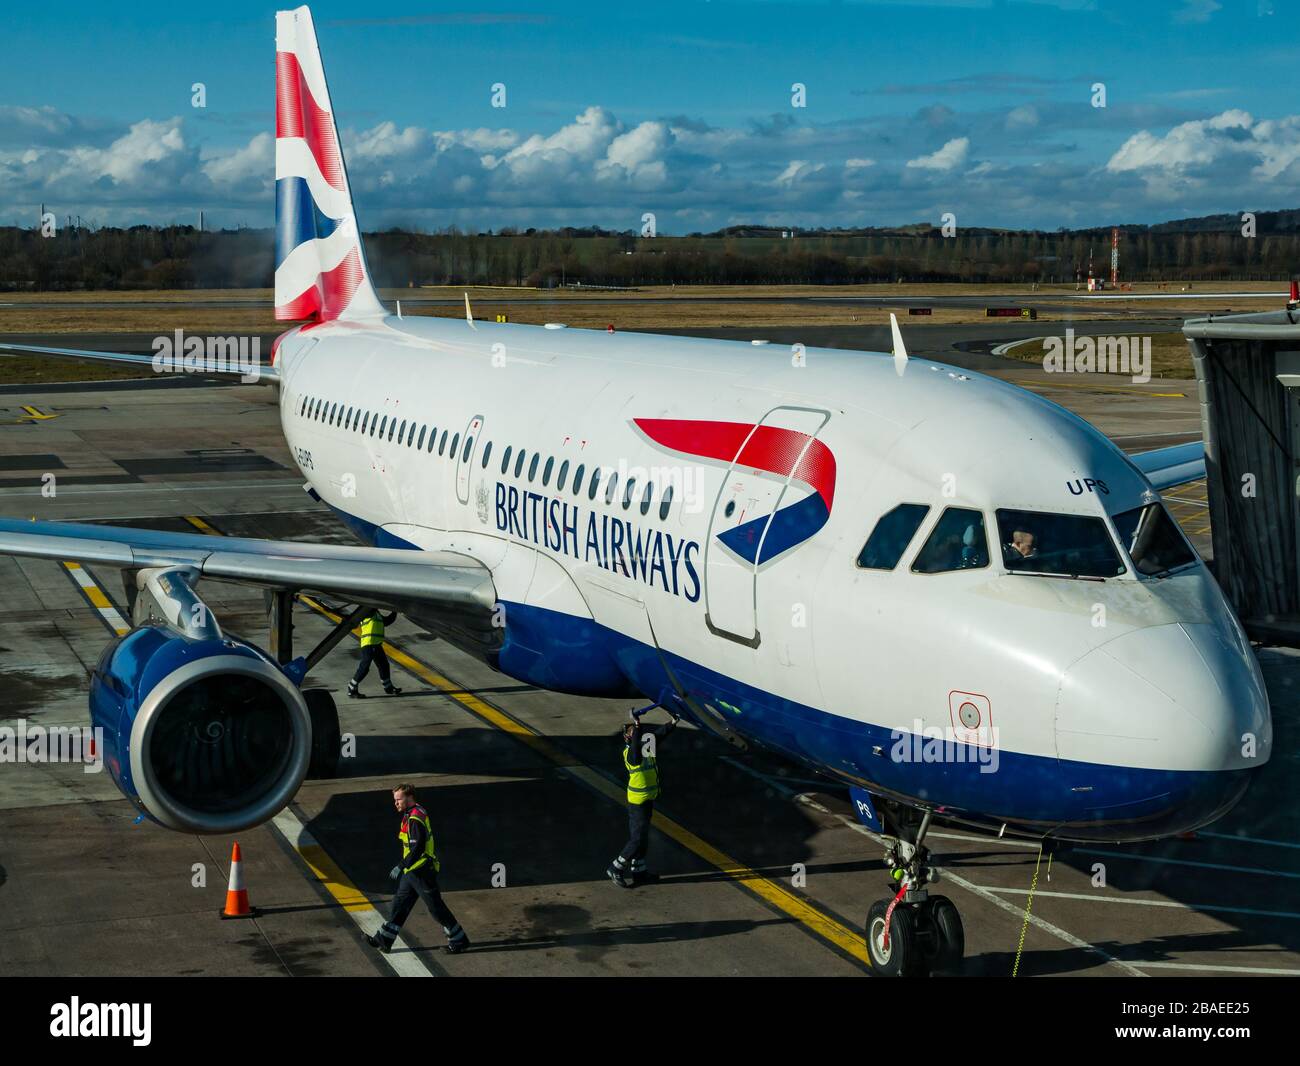 British Airways avion sur le tablier de l'aéroport d'Edimbourg, Edimbourg, Ecosse, Royaume-Uni Banque D'Images